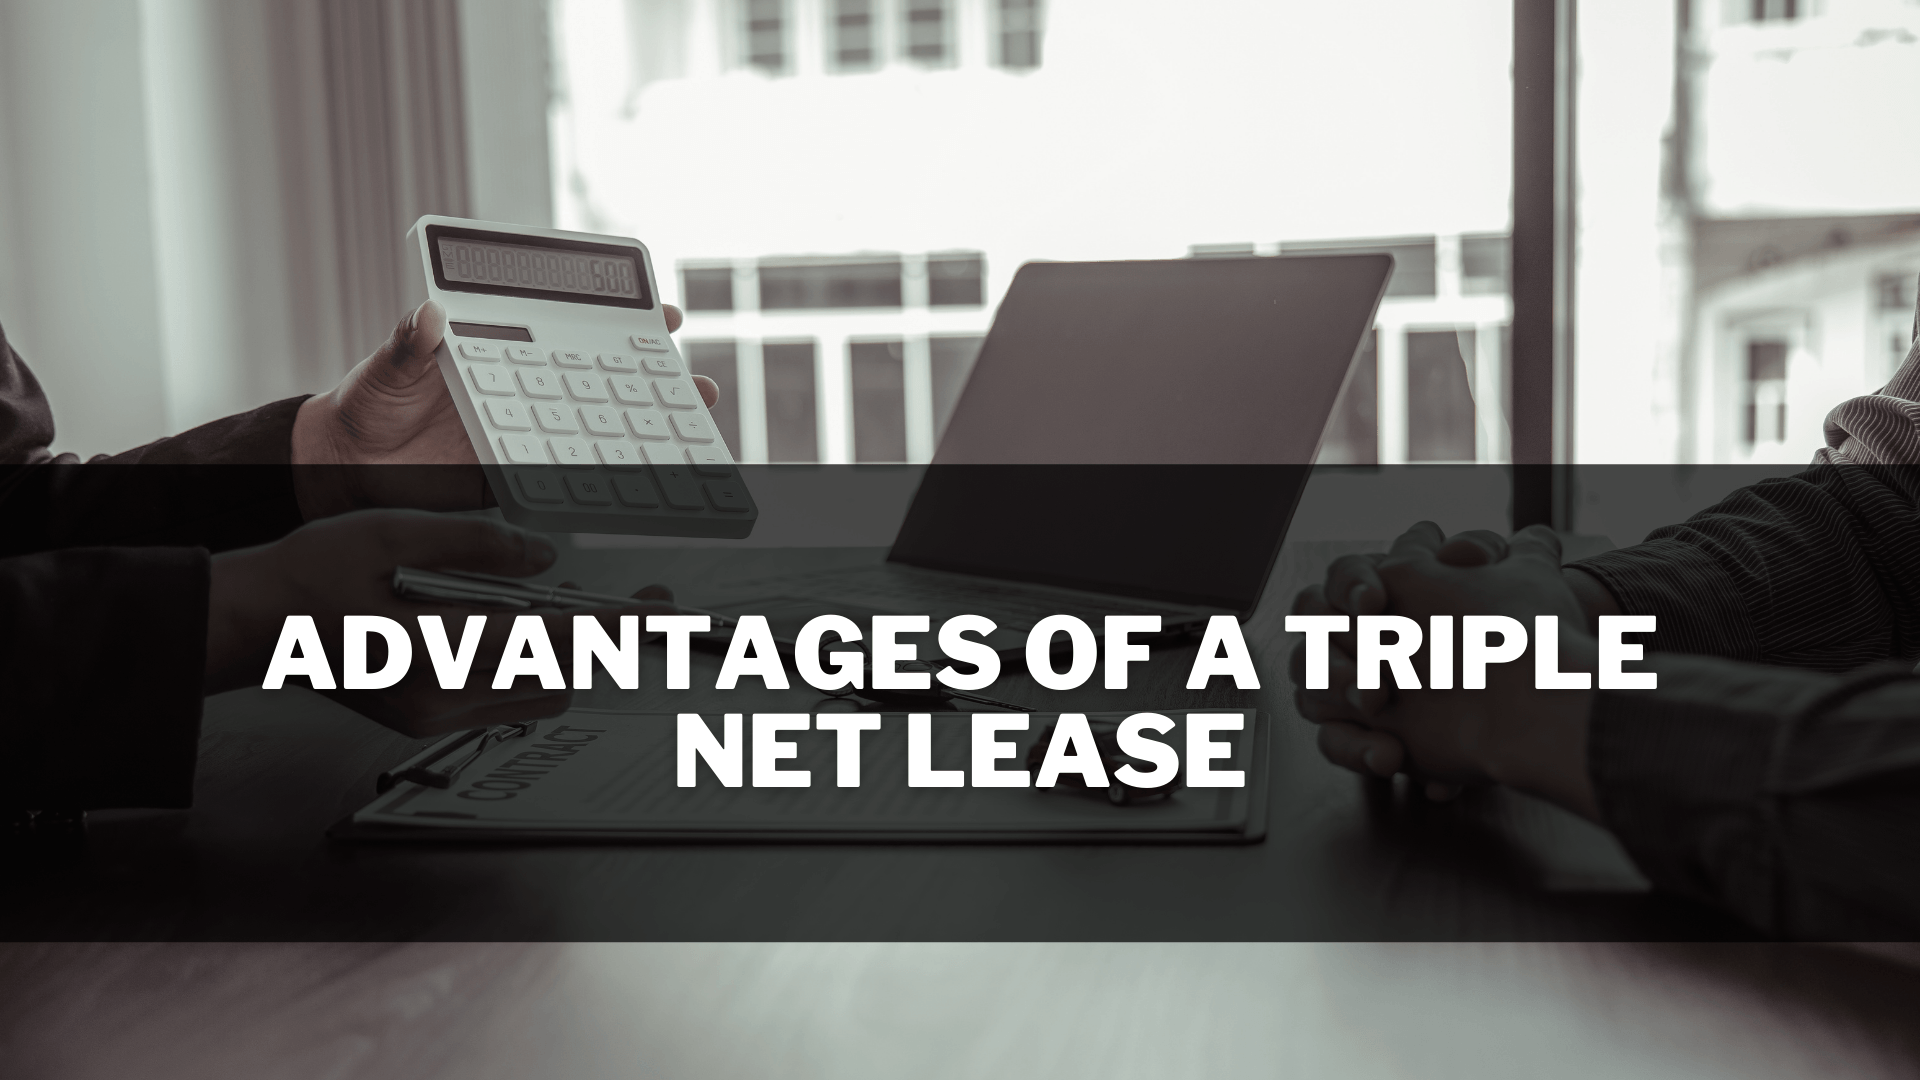 Triple net lease advantages